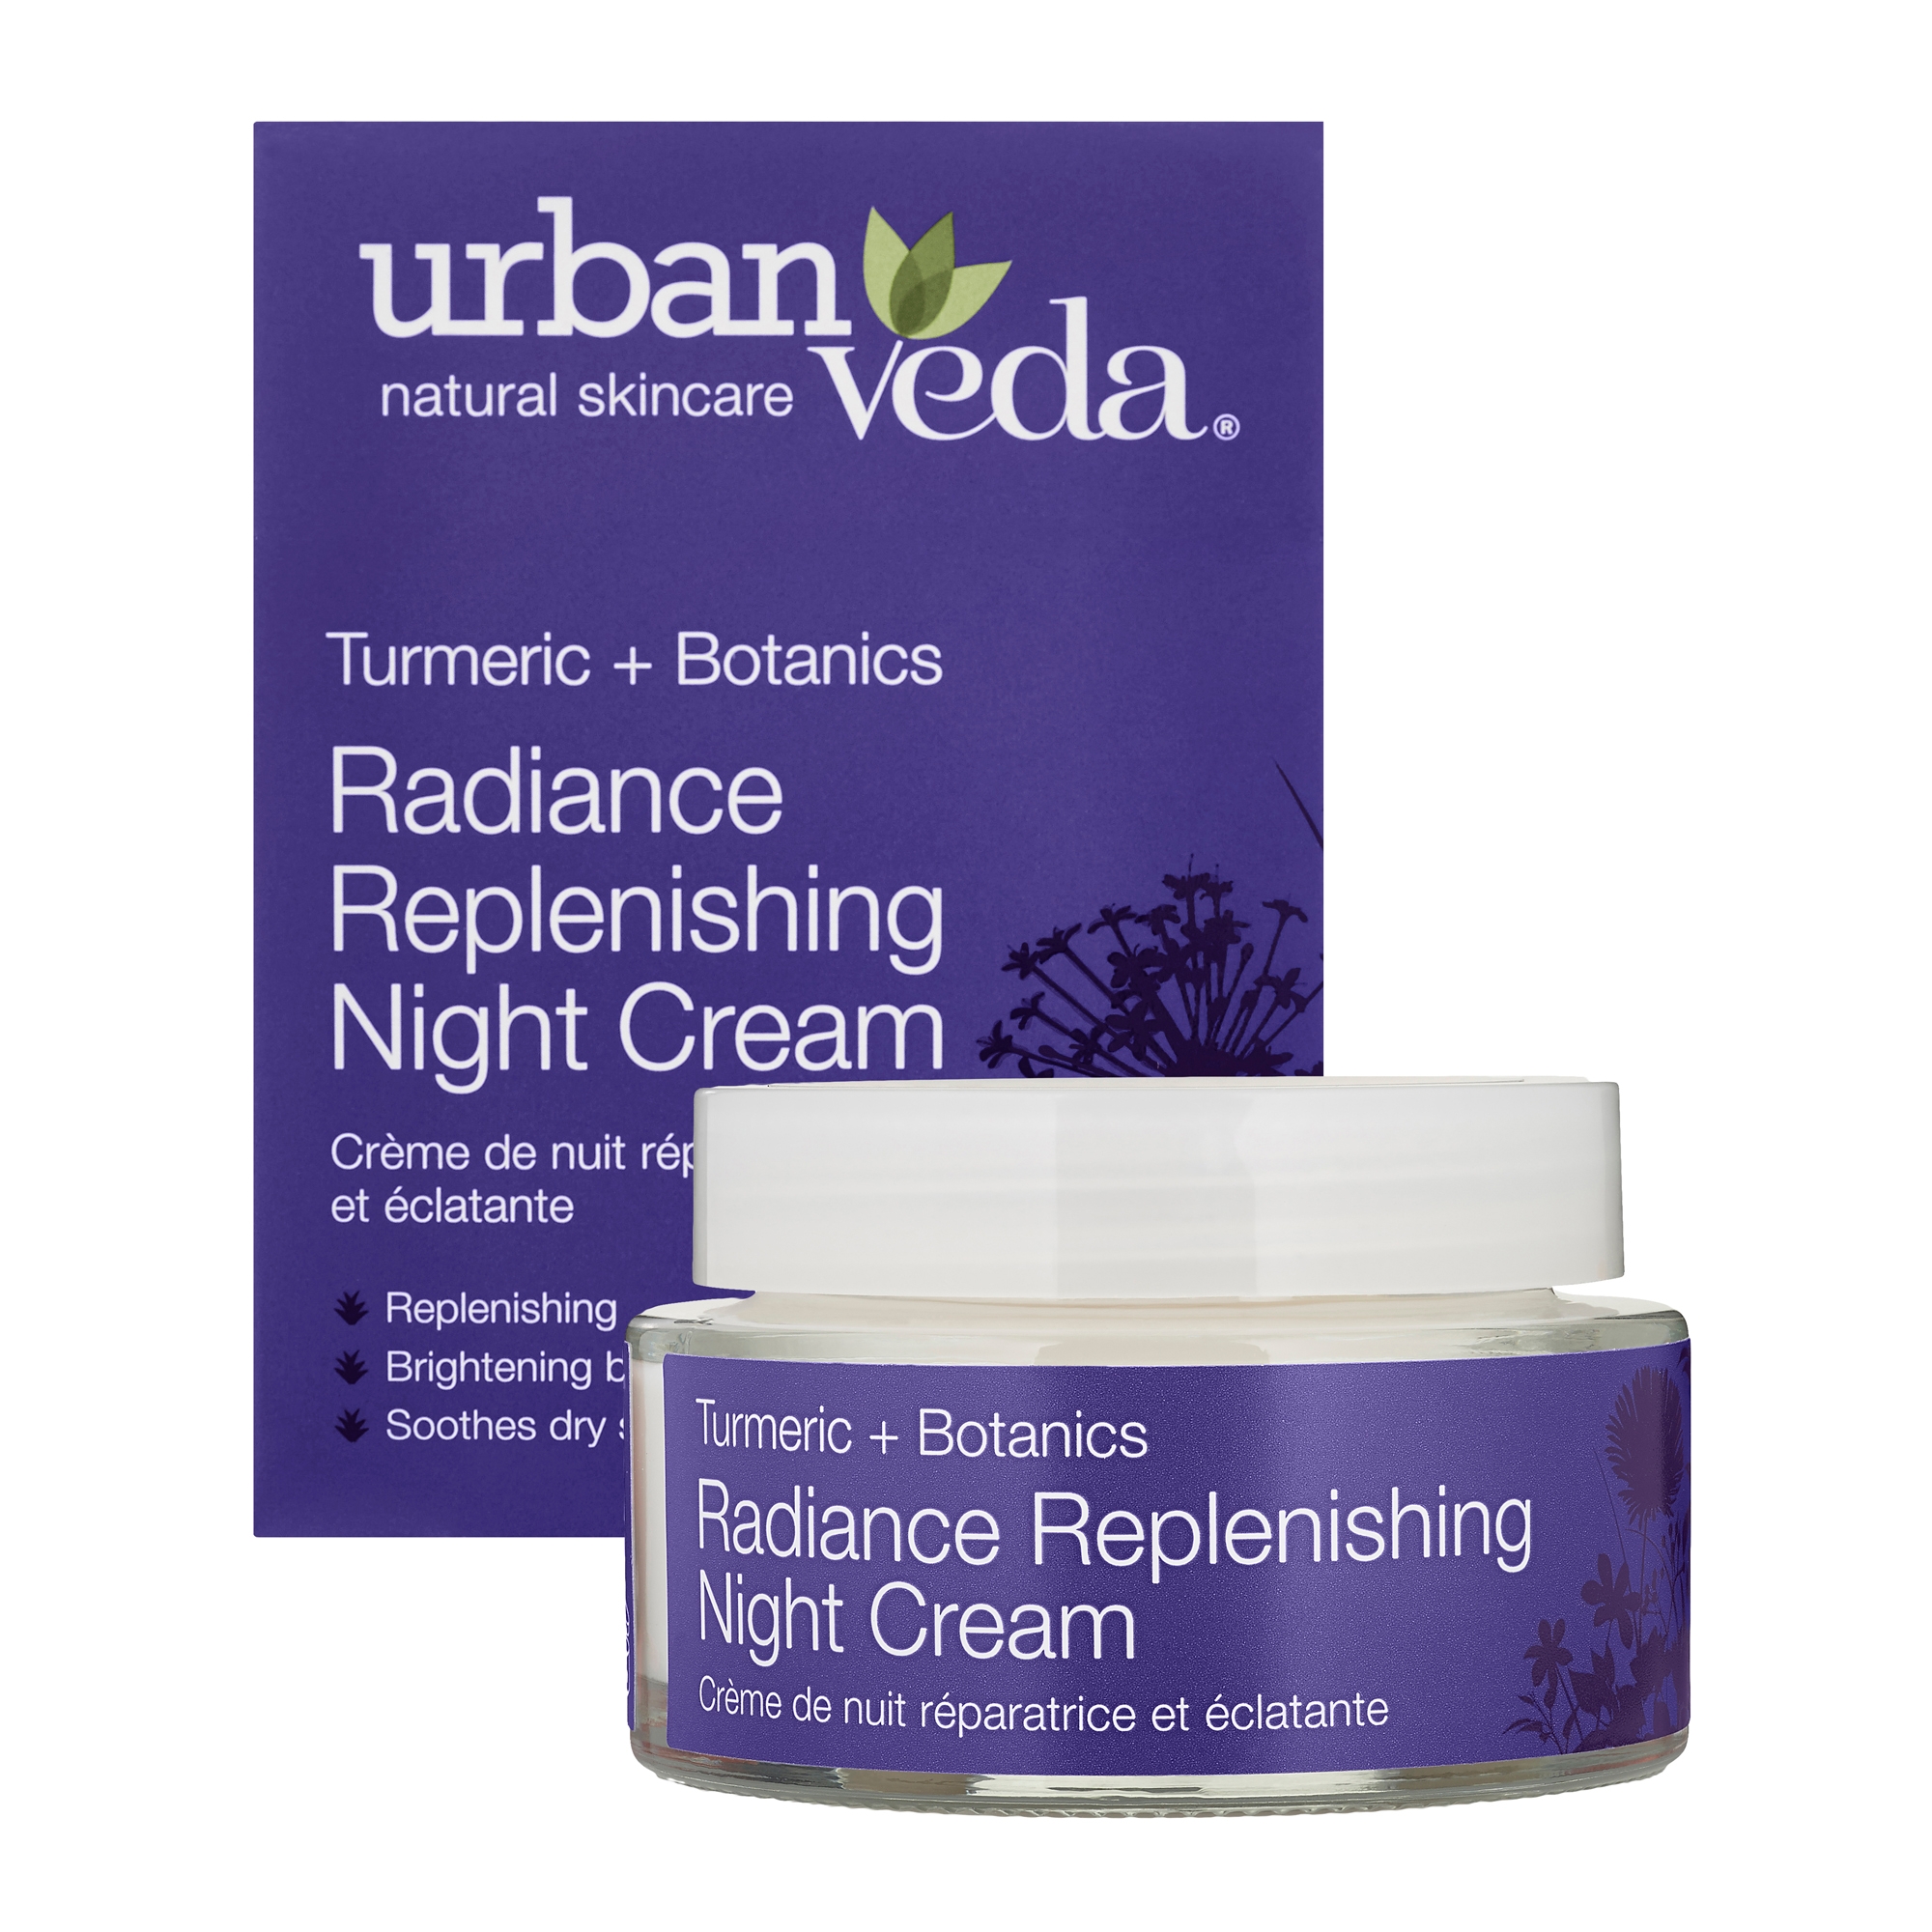 Urban Veda | Urban Veda Radiance Turmeric Replenishing Night Cream, 50ml